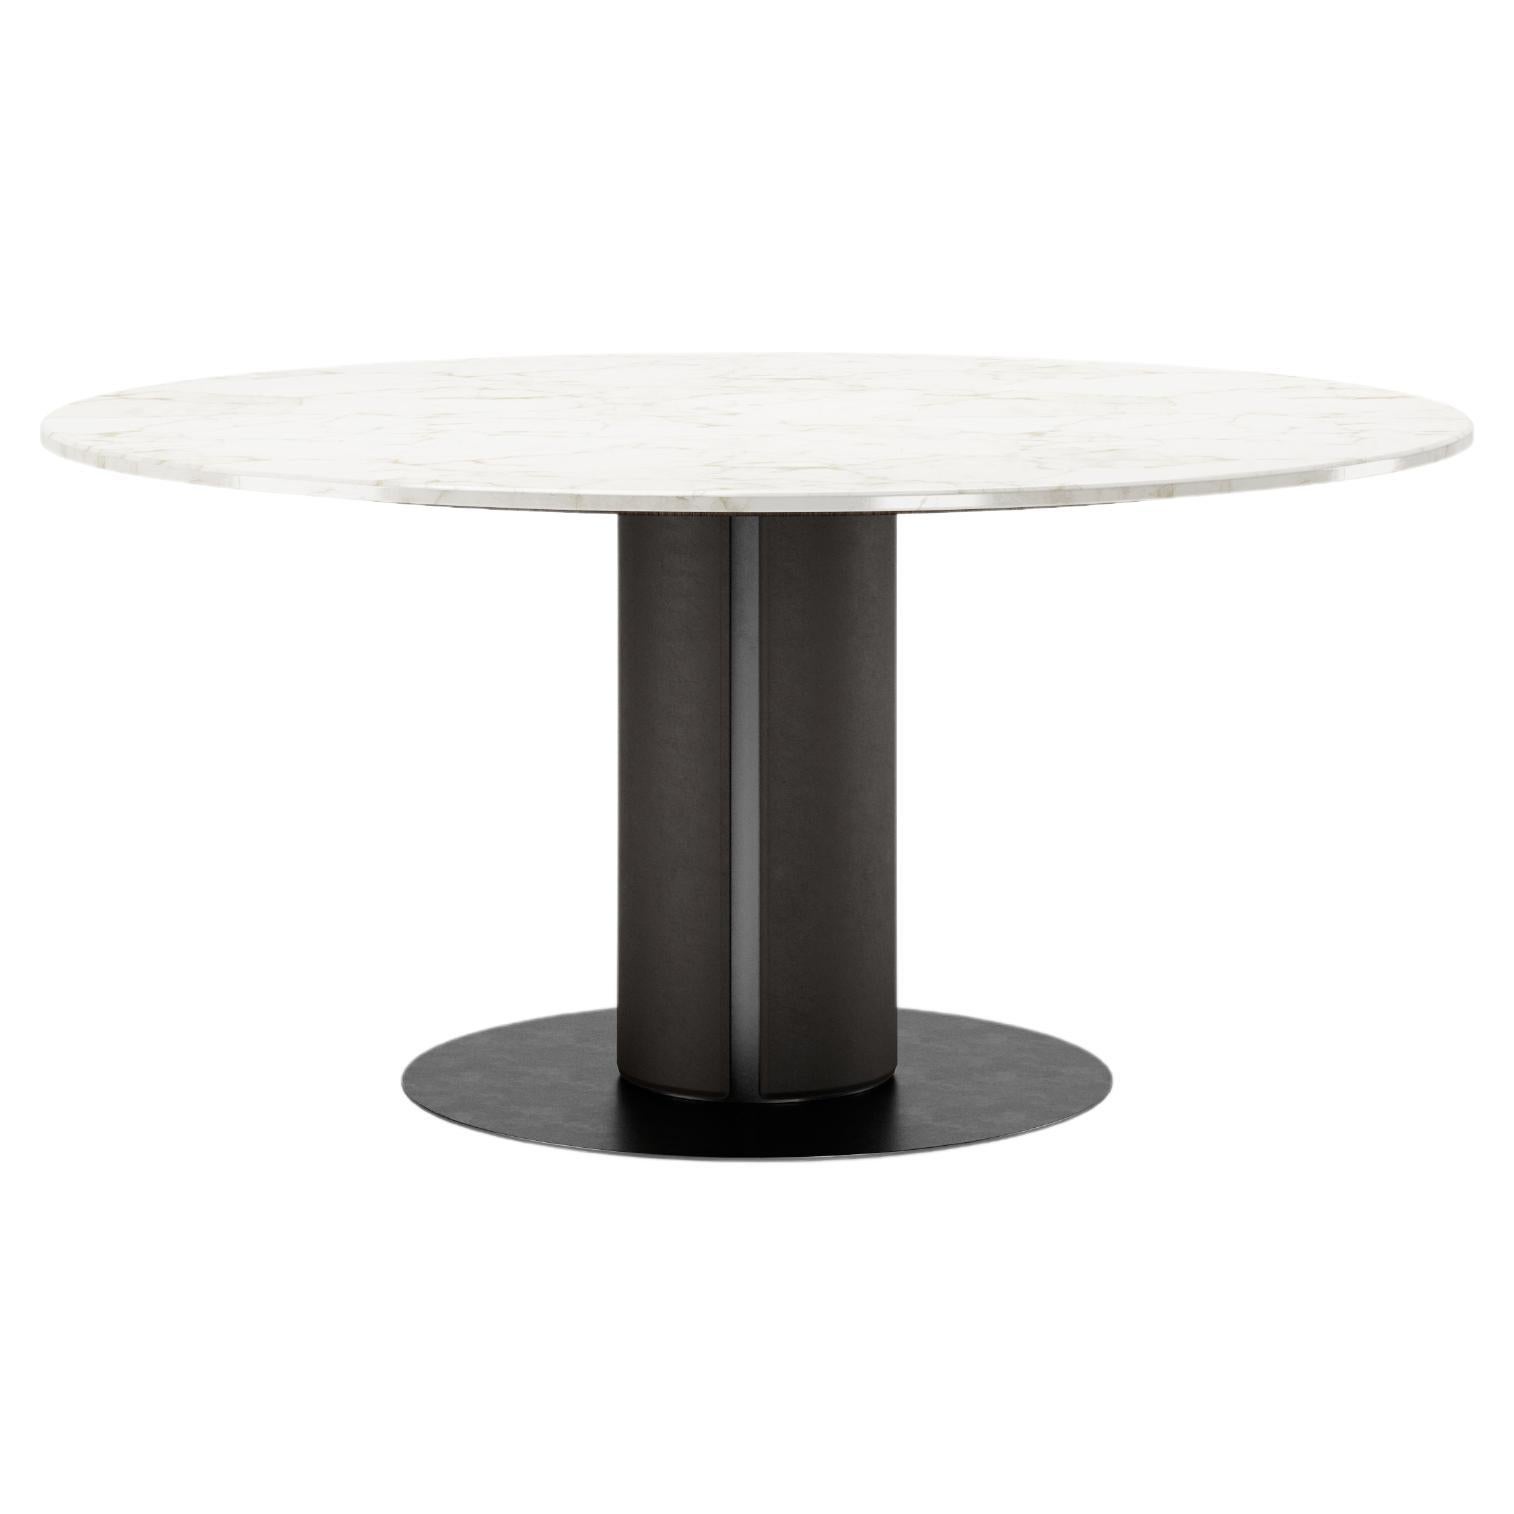 Table de salle à manger Edward, pied recouvert de cuir, plateau en marbre, base en métal